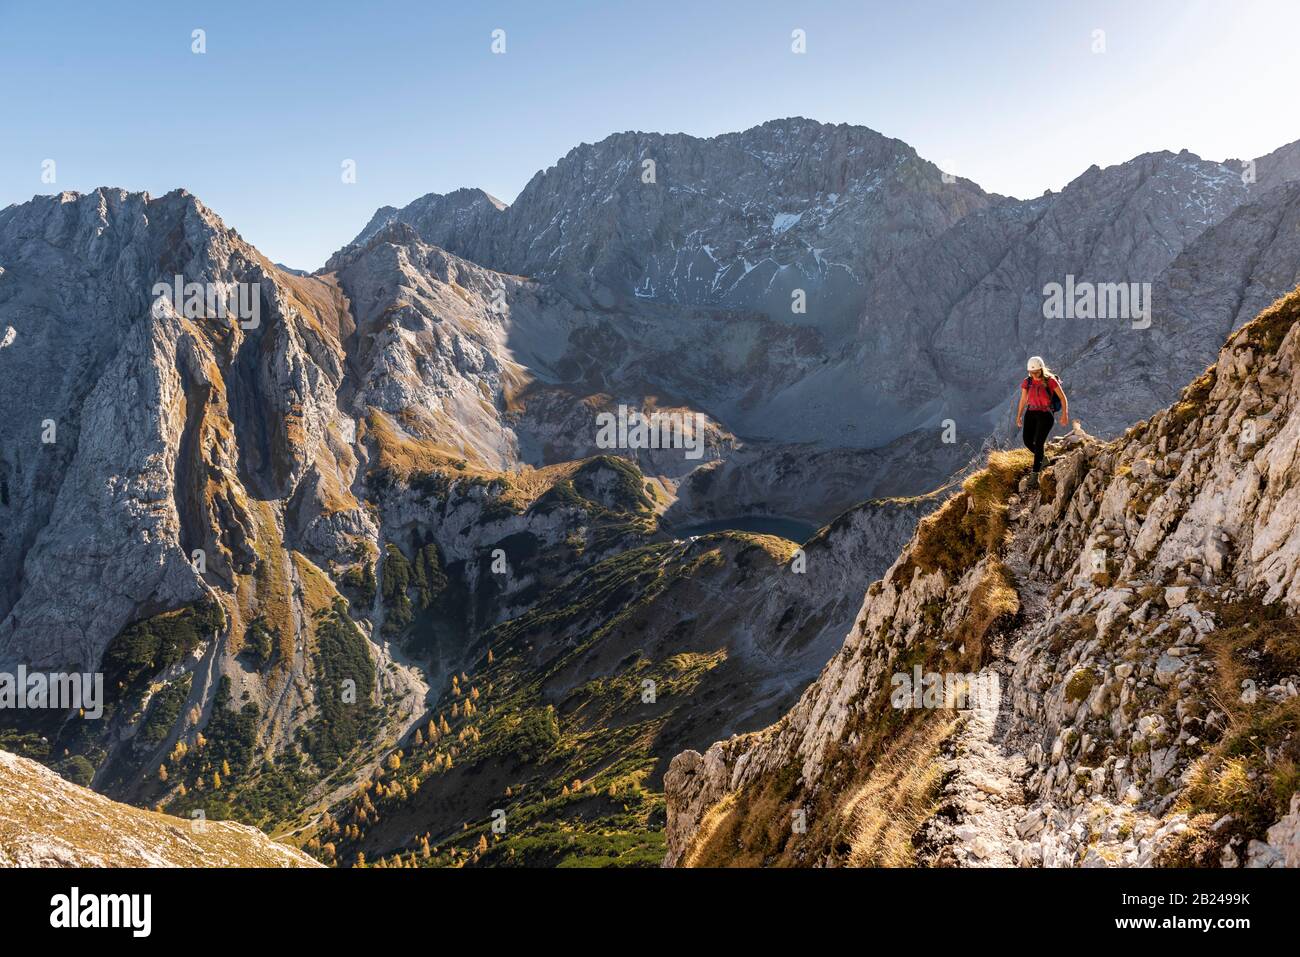 Bergsteiger mit Kletterhelm, der auf einem steilen Berghang verläuft, Wanderweg zur Ehrwalder Sonnenspitze, Ehrwald, Mieminger Kette, Tyrol, Österreich Stockfoto